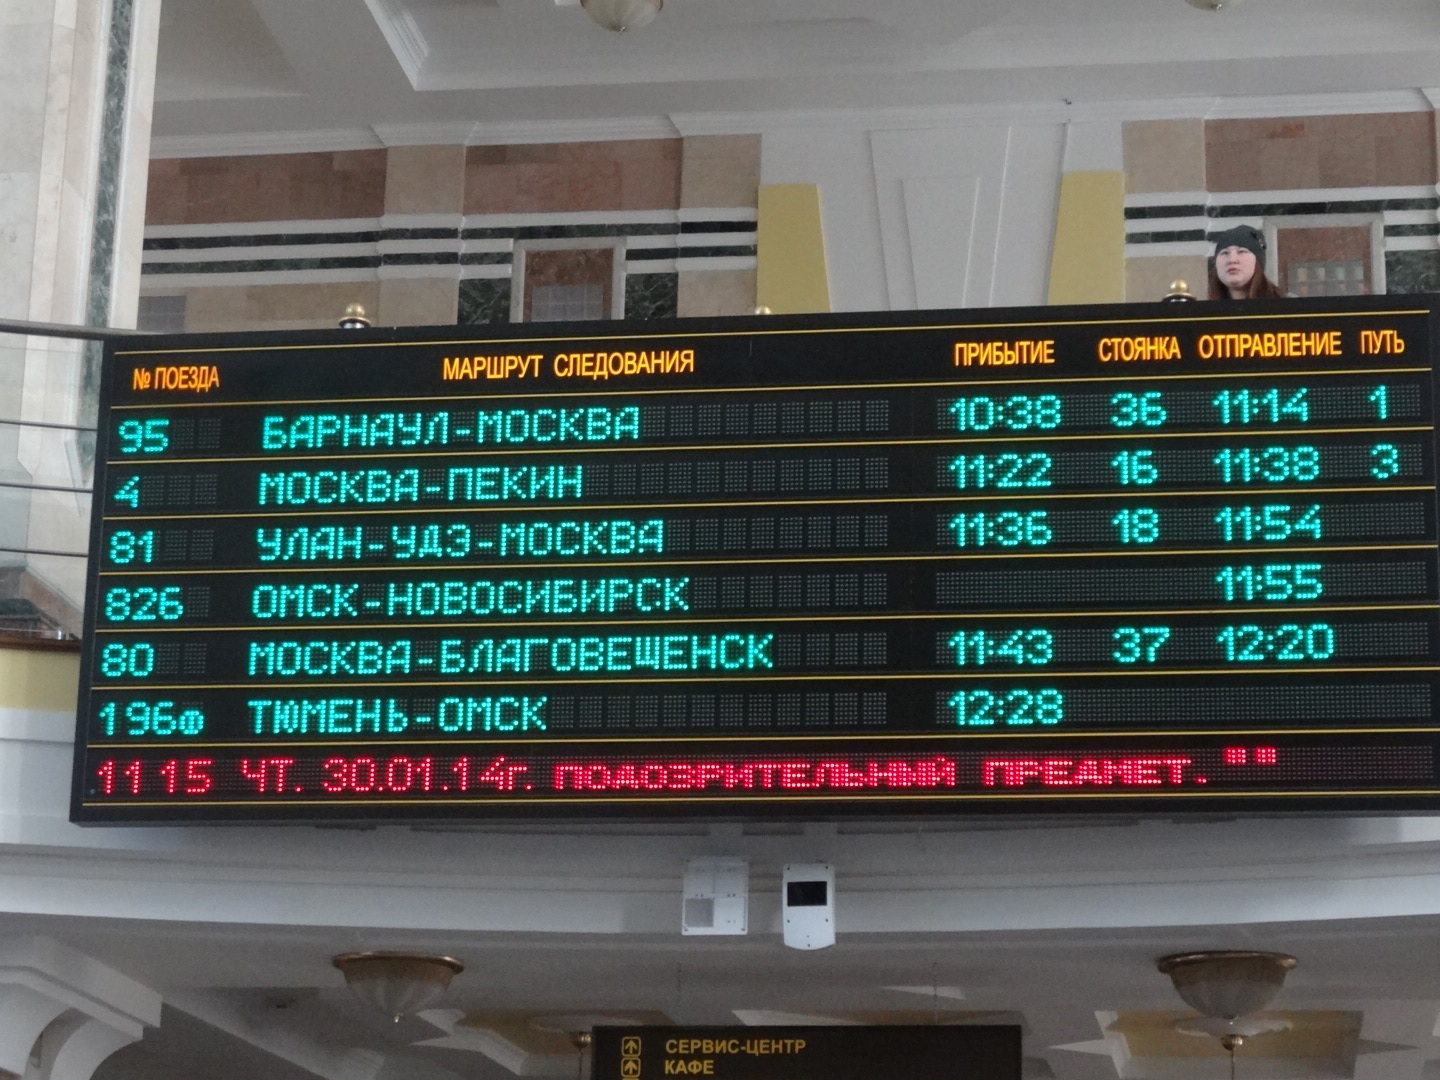 Движение поезда абакан москва. Расписание поездов табло. Табло на вокзале. Прибытие поезда.